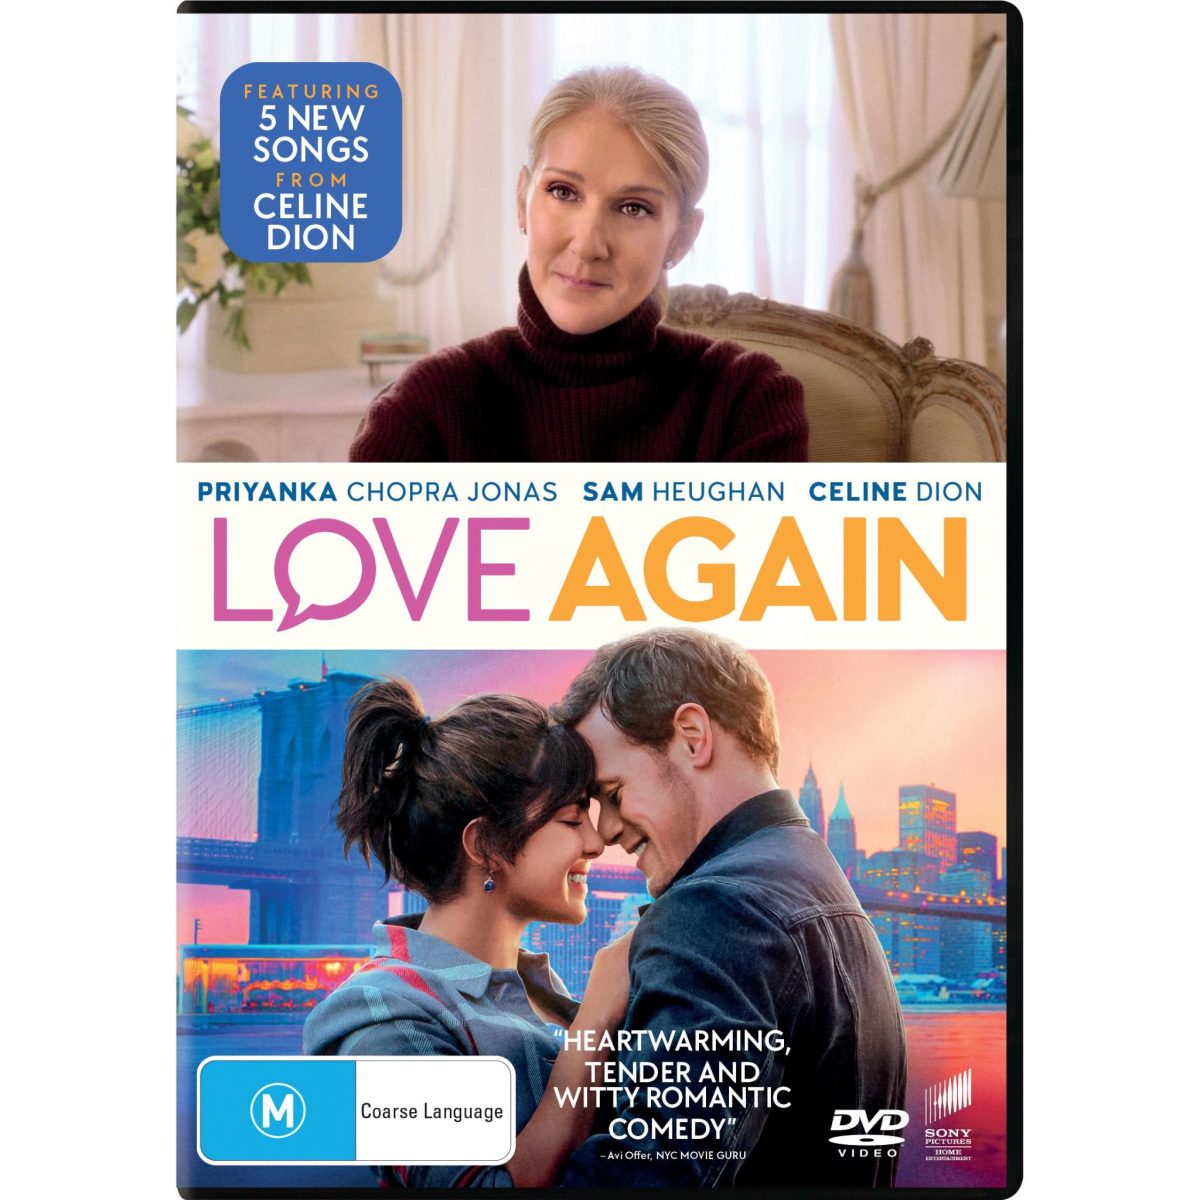 Love Again DVD | Priyanka Chopra Jonas | Region 2 & 4